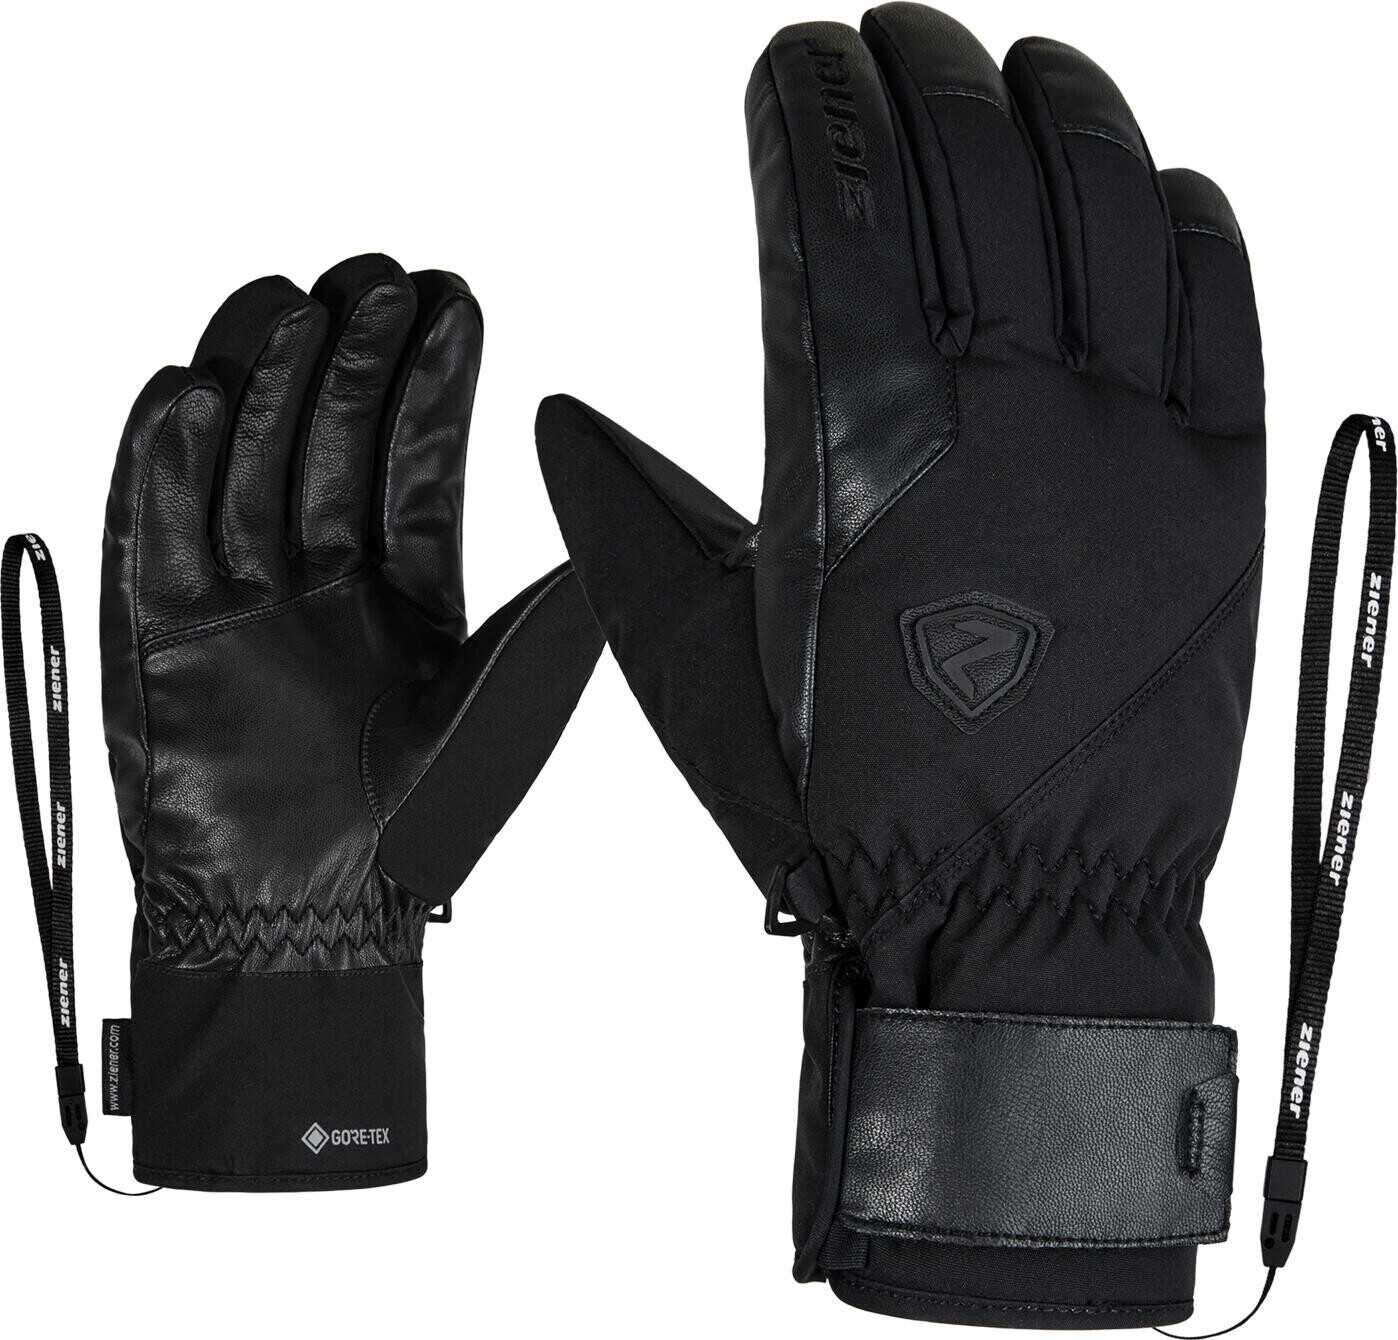 Ziener Genio GTX PR Glove Ski Alpine (801075) black ab 66,39 € |  Preisvergleich bei